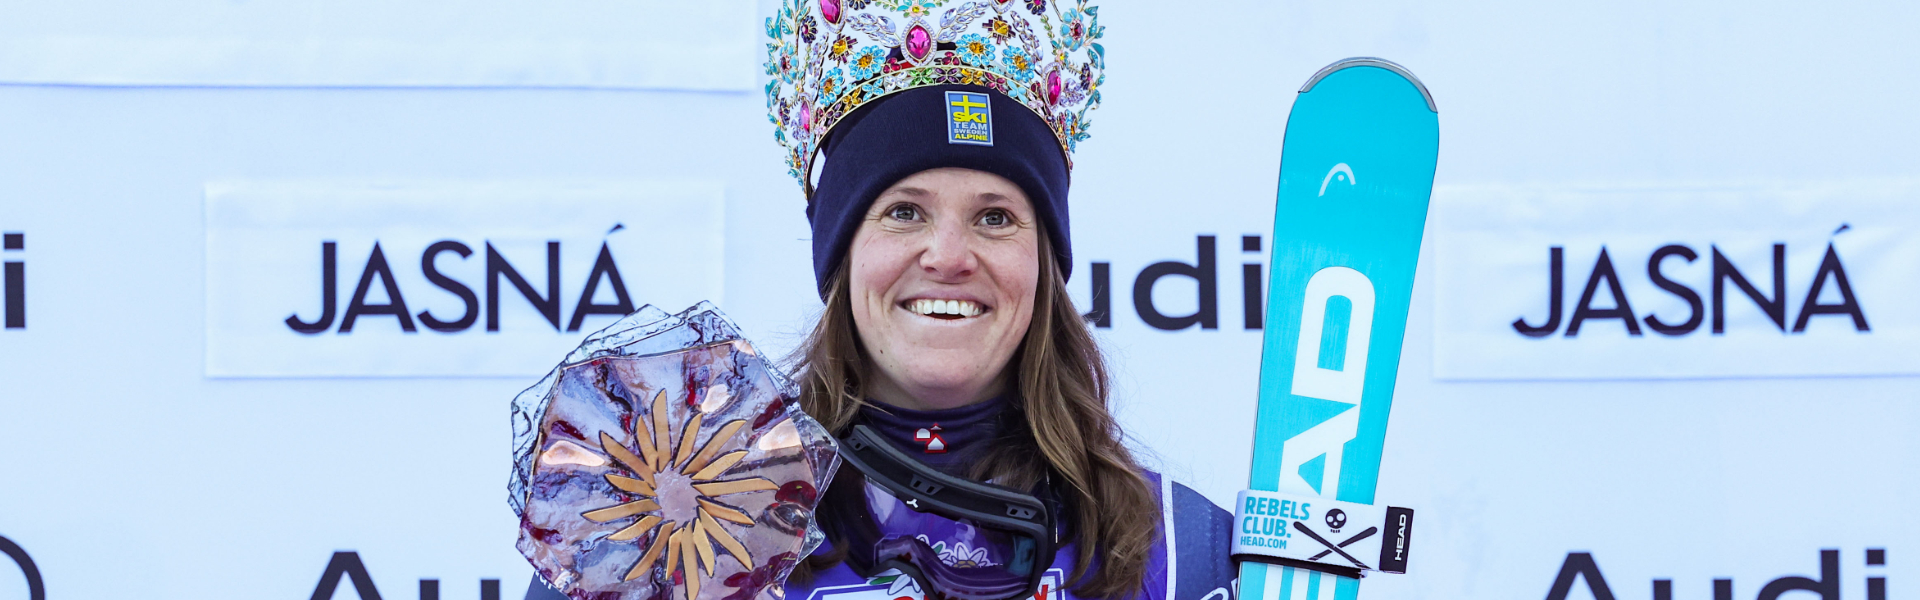 Sara Hector mit Fabelzeit zum fünften Weltcup-Sieg